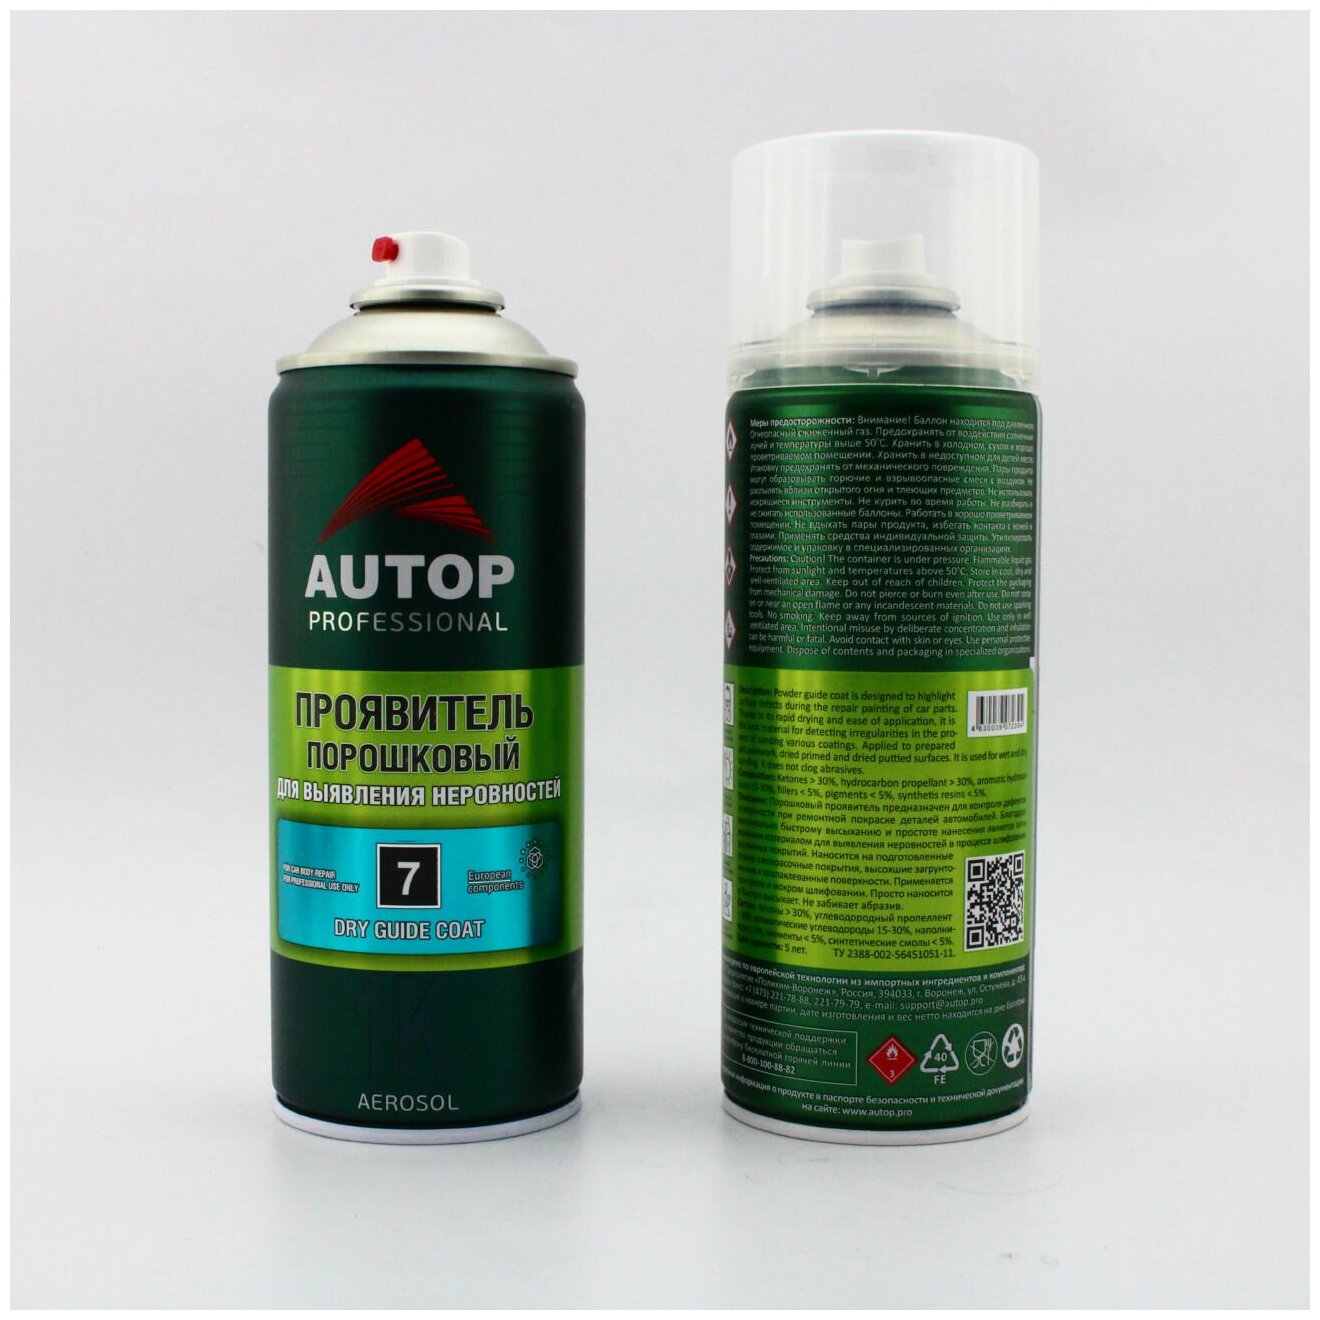 Проявитель порошковый "Autop" №7 1К Dry Guide Coat Мs Spray Clear аэрозольный, 520 мл